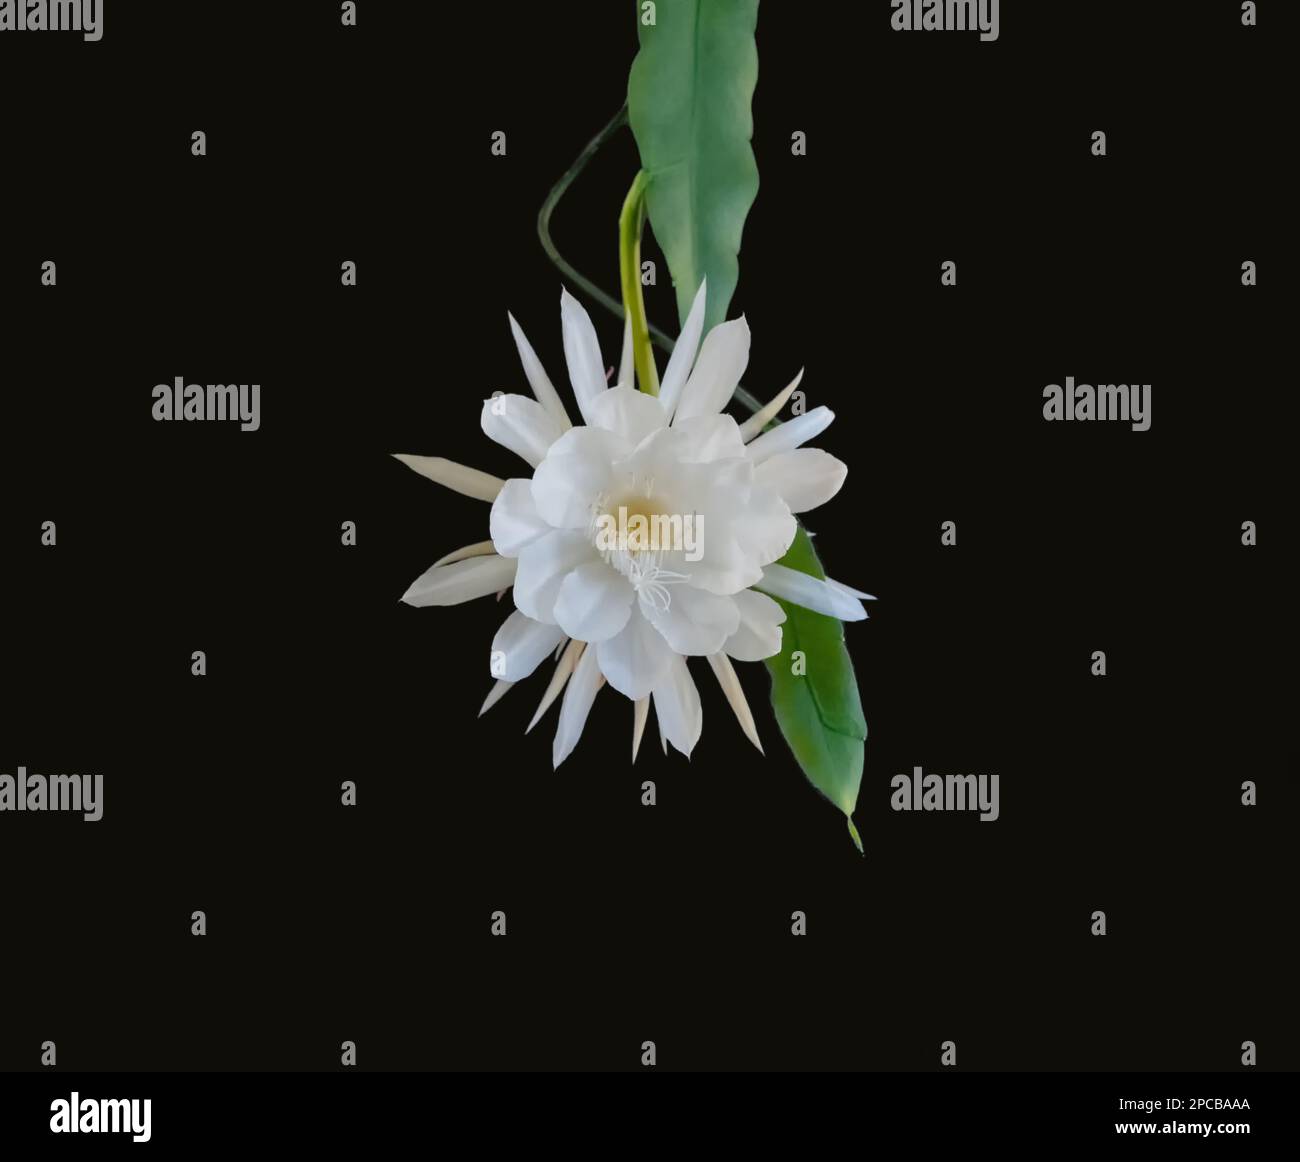 Vorderansicht einer weißen Blüte der Königin der Nacht (Epiphyllum oxypetalum) Kaktuspflanze, nächtliche Blüte, mit bezauberndem, verwitterndem Duft Stockfoto